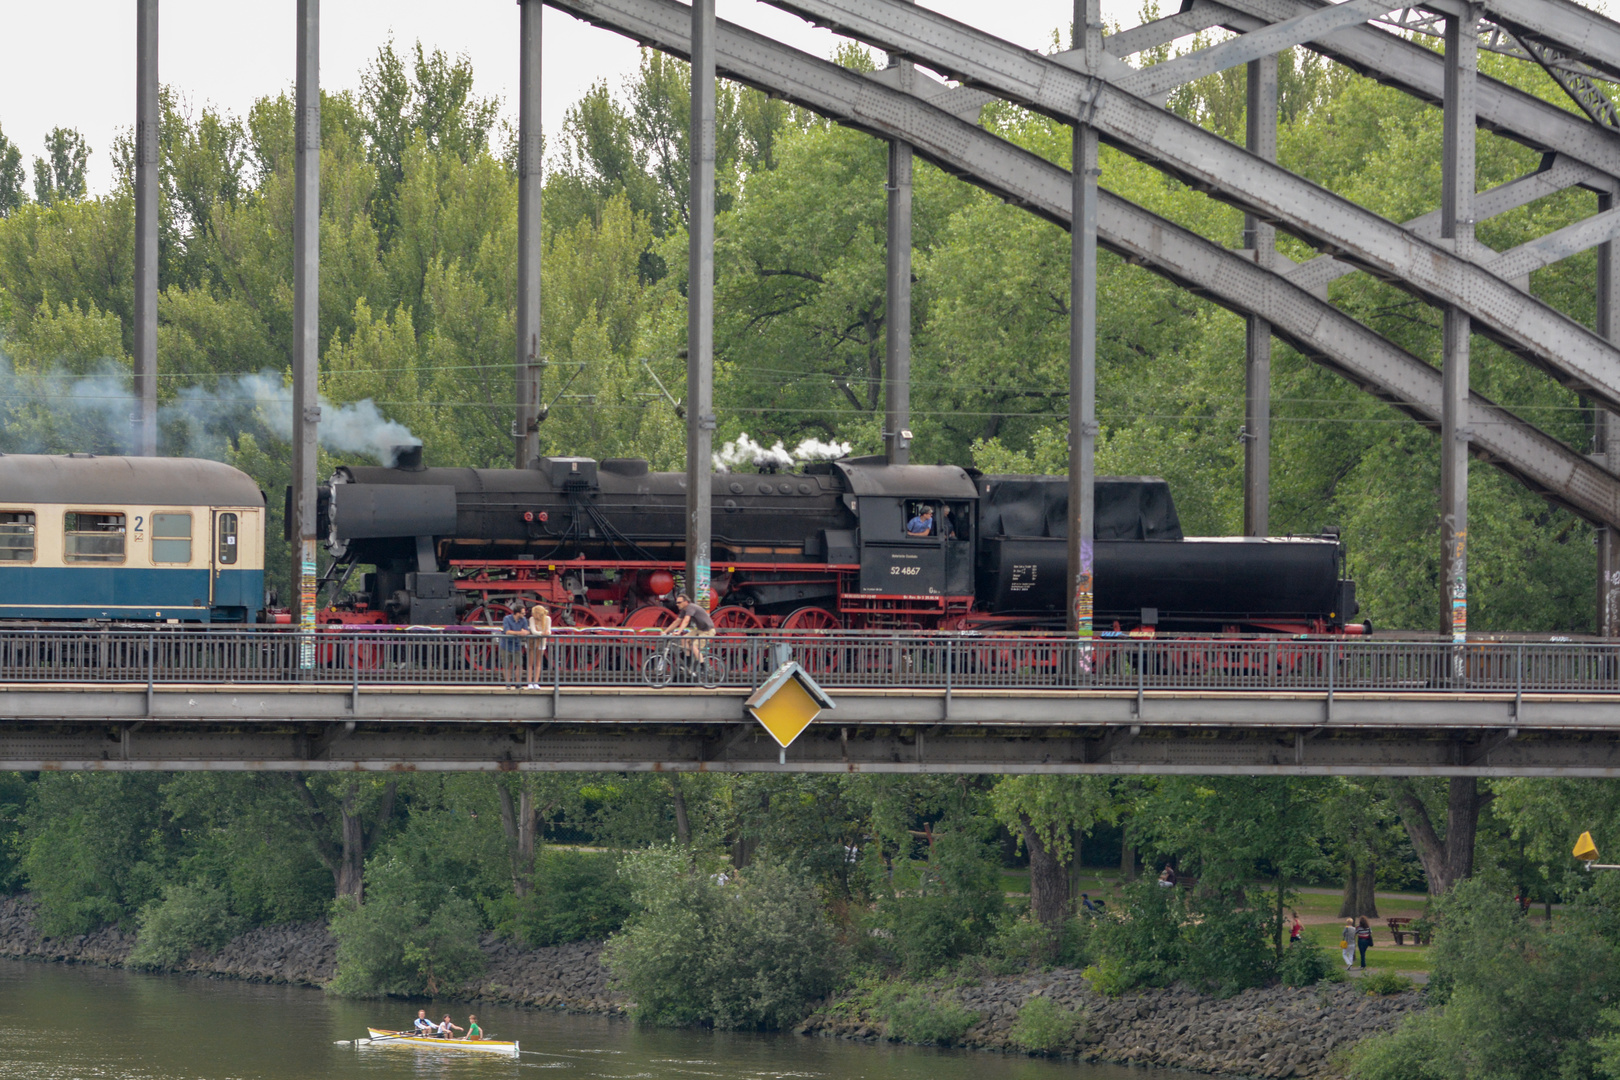 Historische Dampflok auf der Deutschherrnbrücke - Tamron 150-600